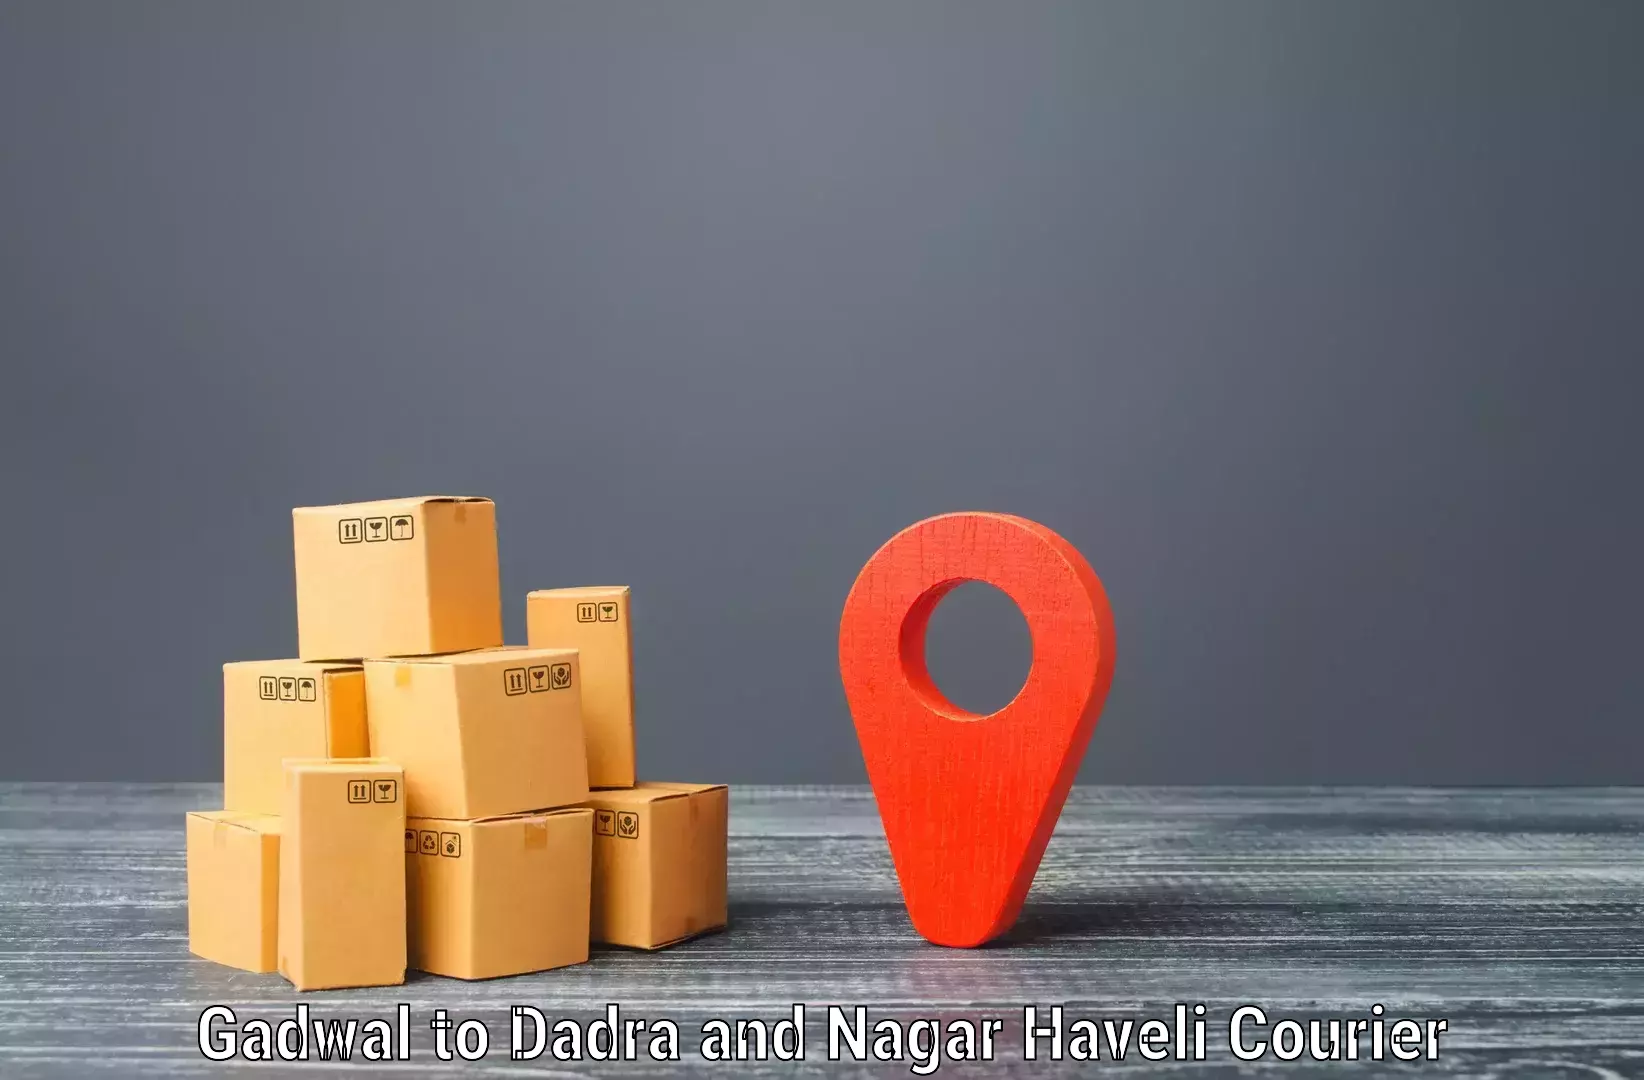 Modern courier technology Gadwal to Silvassa